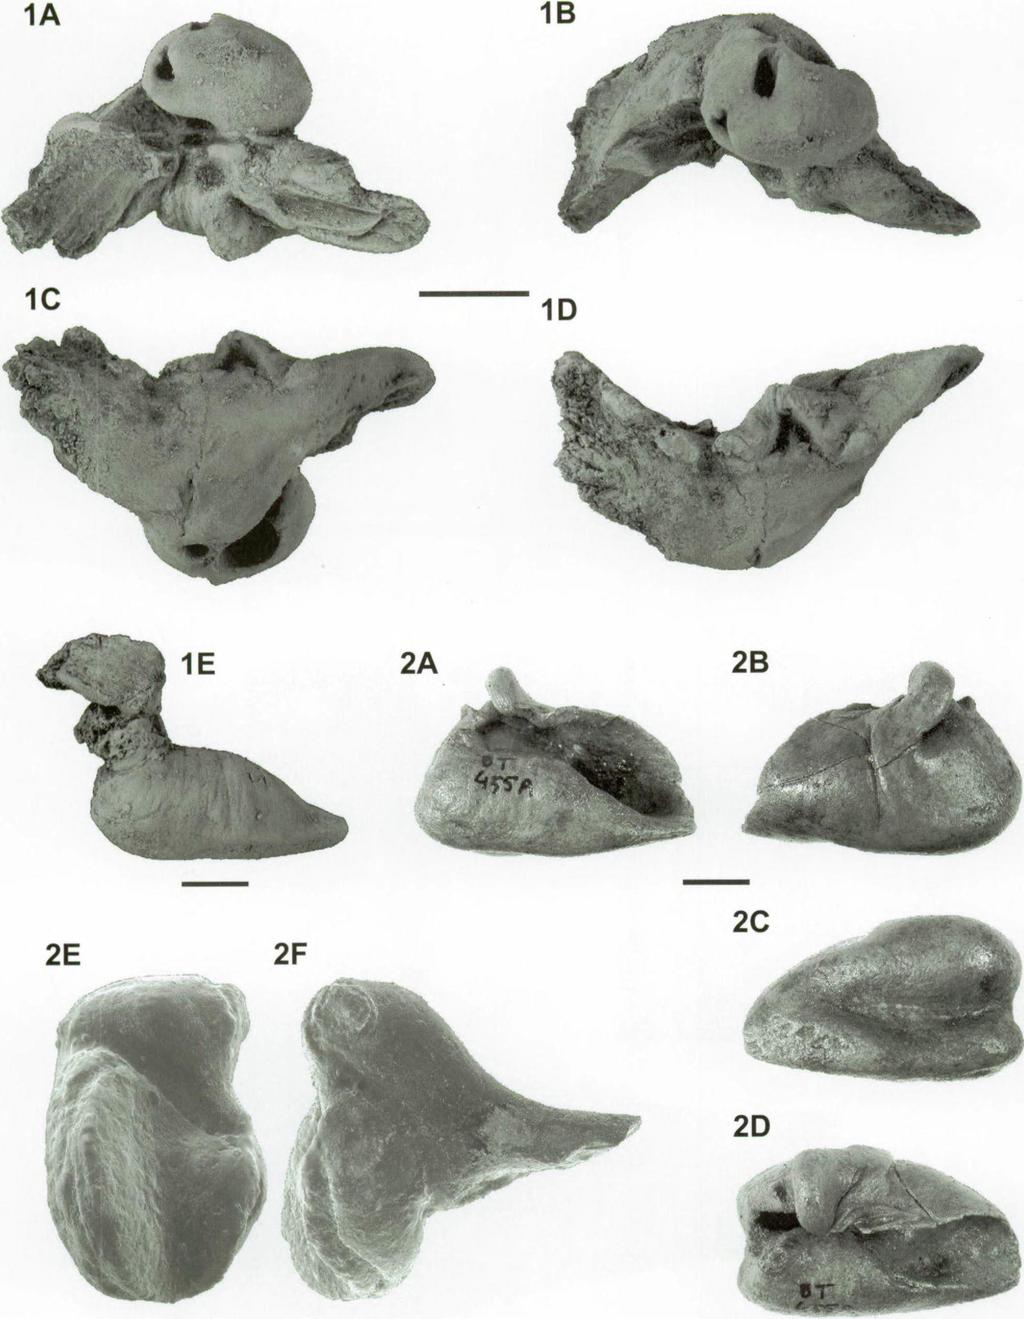 Eurhinodelphis